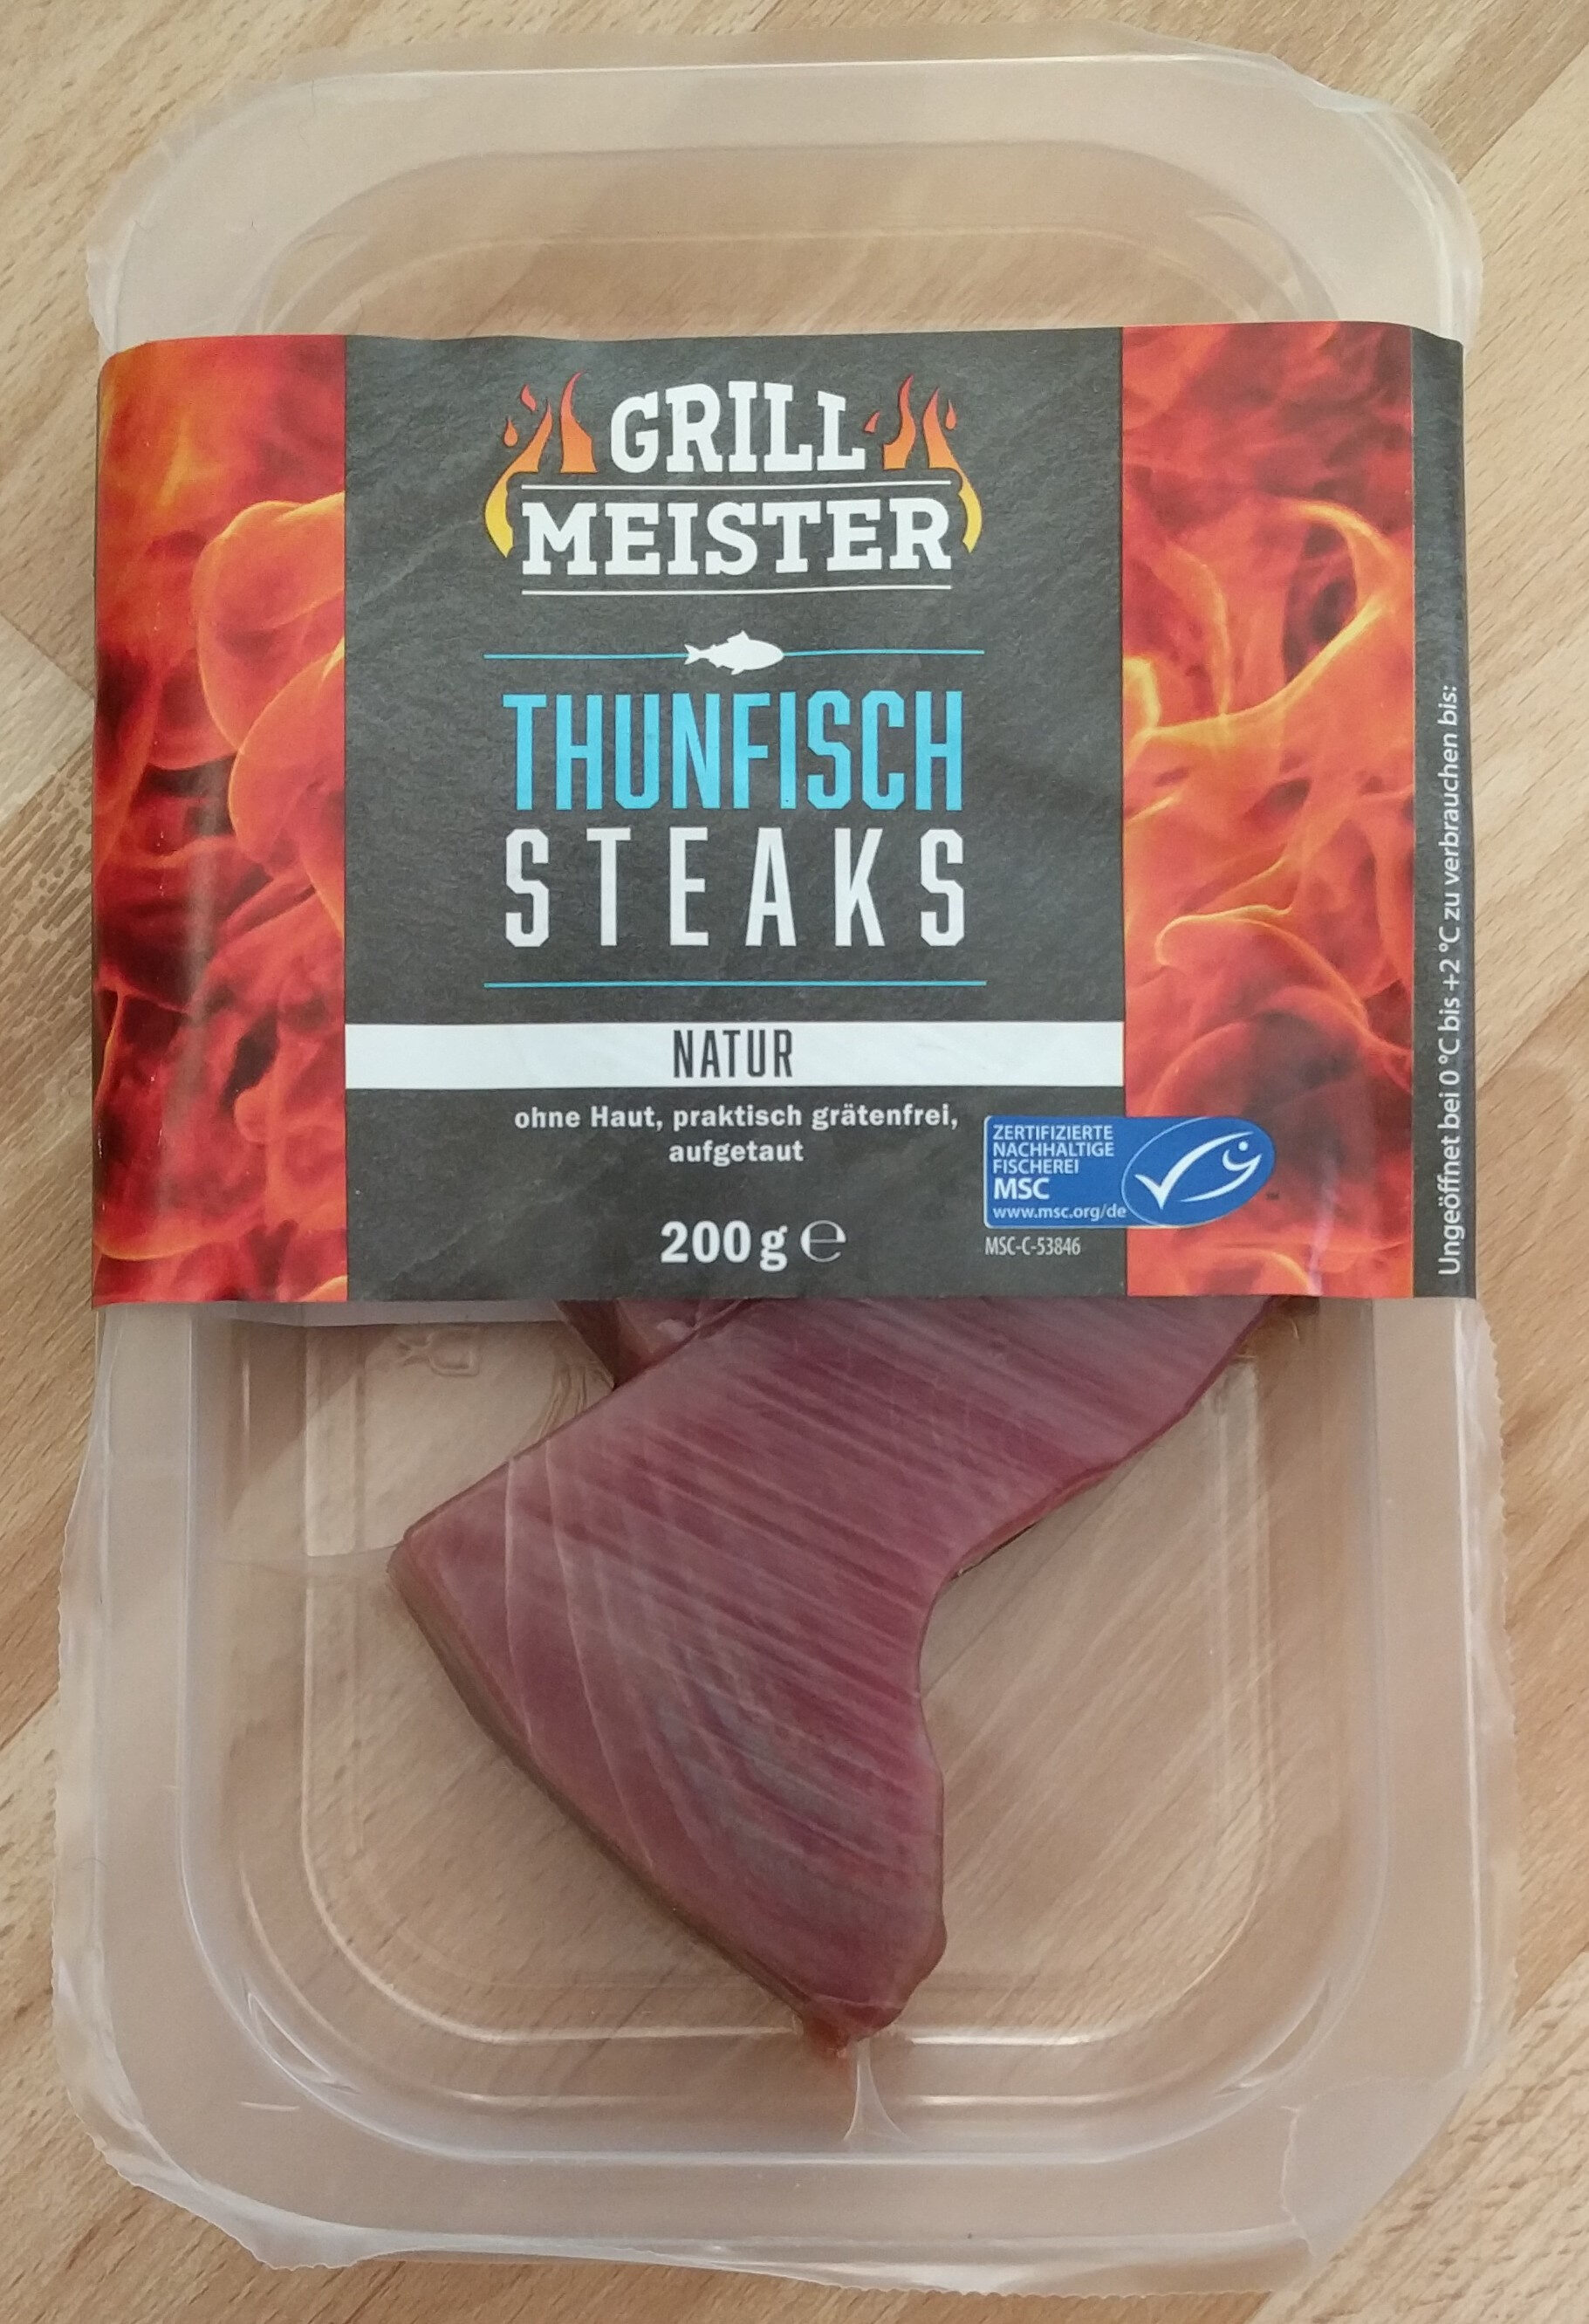 Thunfisch Steaks natur - Product - de